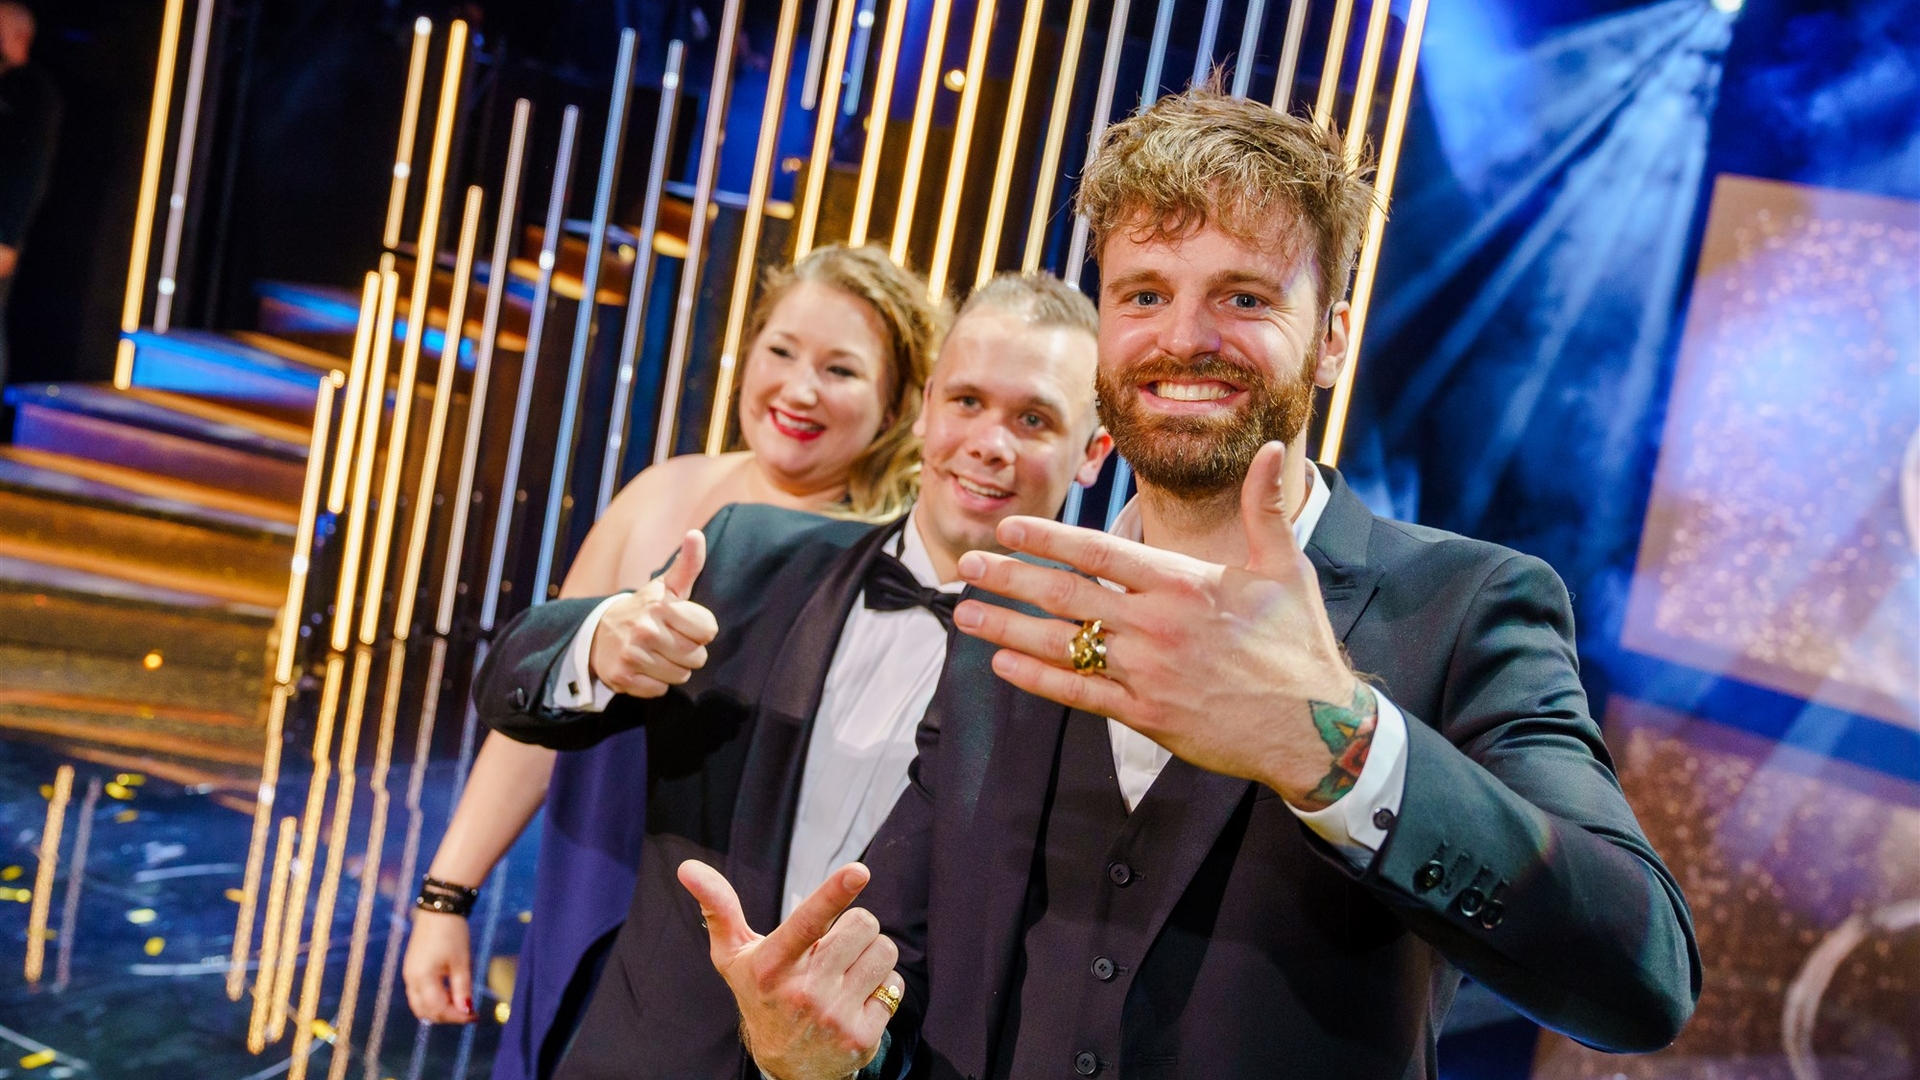 Over Mijn Lijk wint de Gouden Televizier-Ring 2020